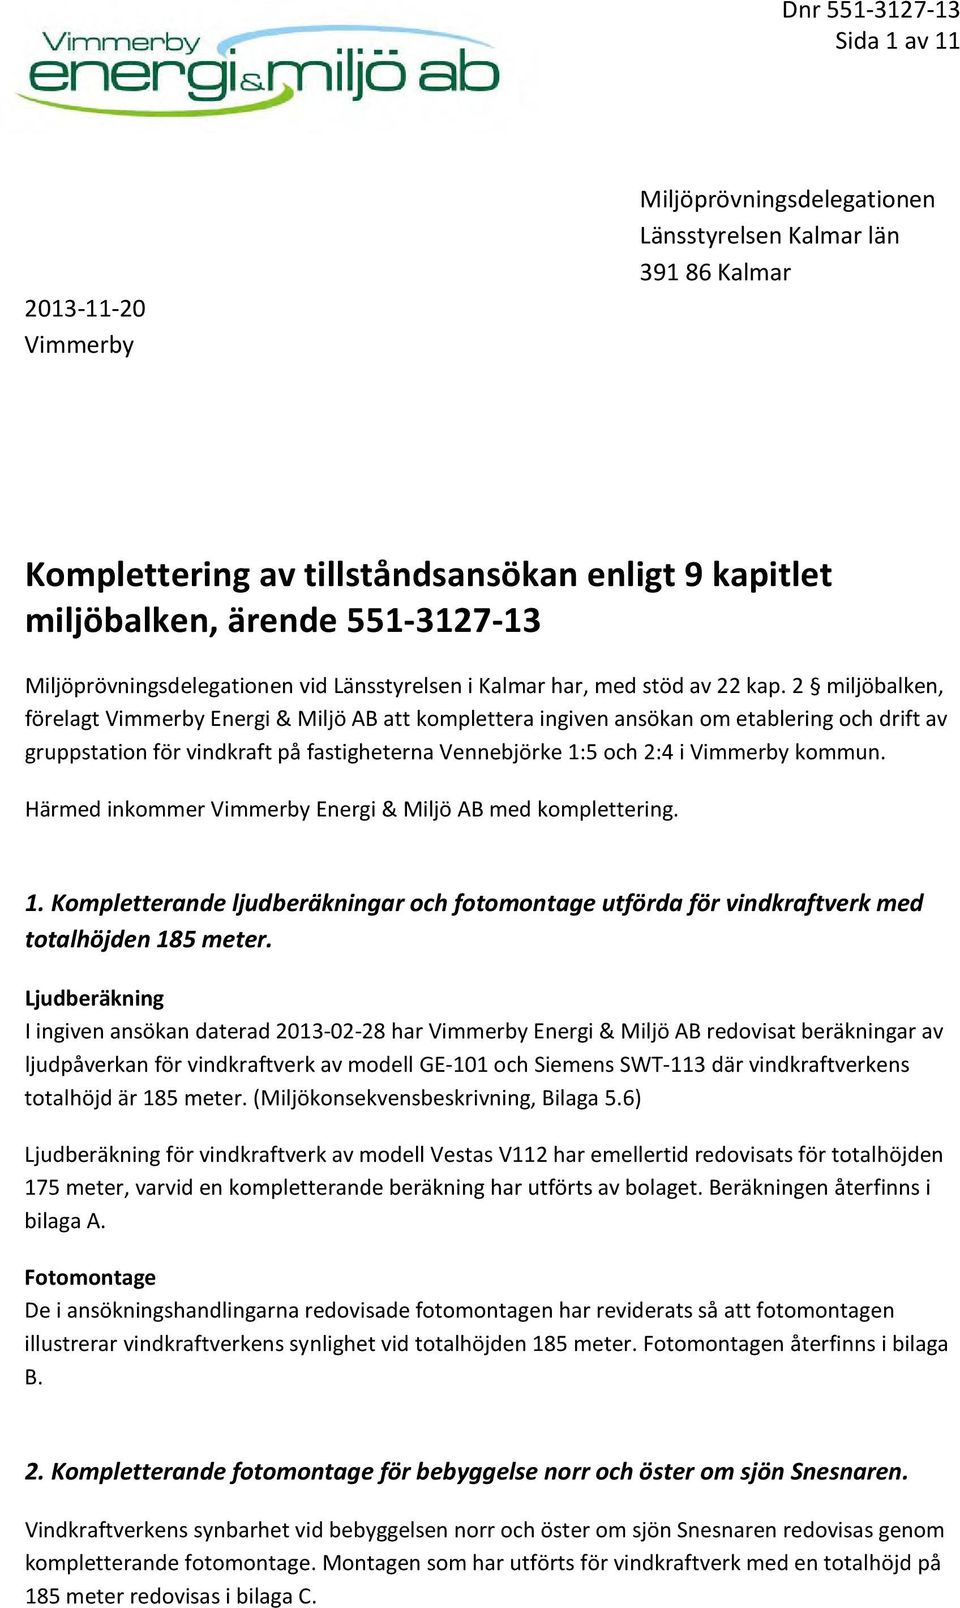 2 miljöbalken, förelagt Vimmerby Energi & Miljö AB att komplettera ingiven ansökan om etablering och drift av gruppstation för vindkraft på fastigheterna Vennebjörke 1:5 och 2:4 i Vimmerby kommun.